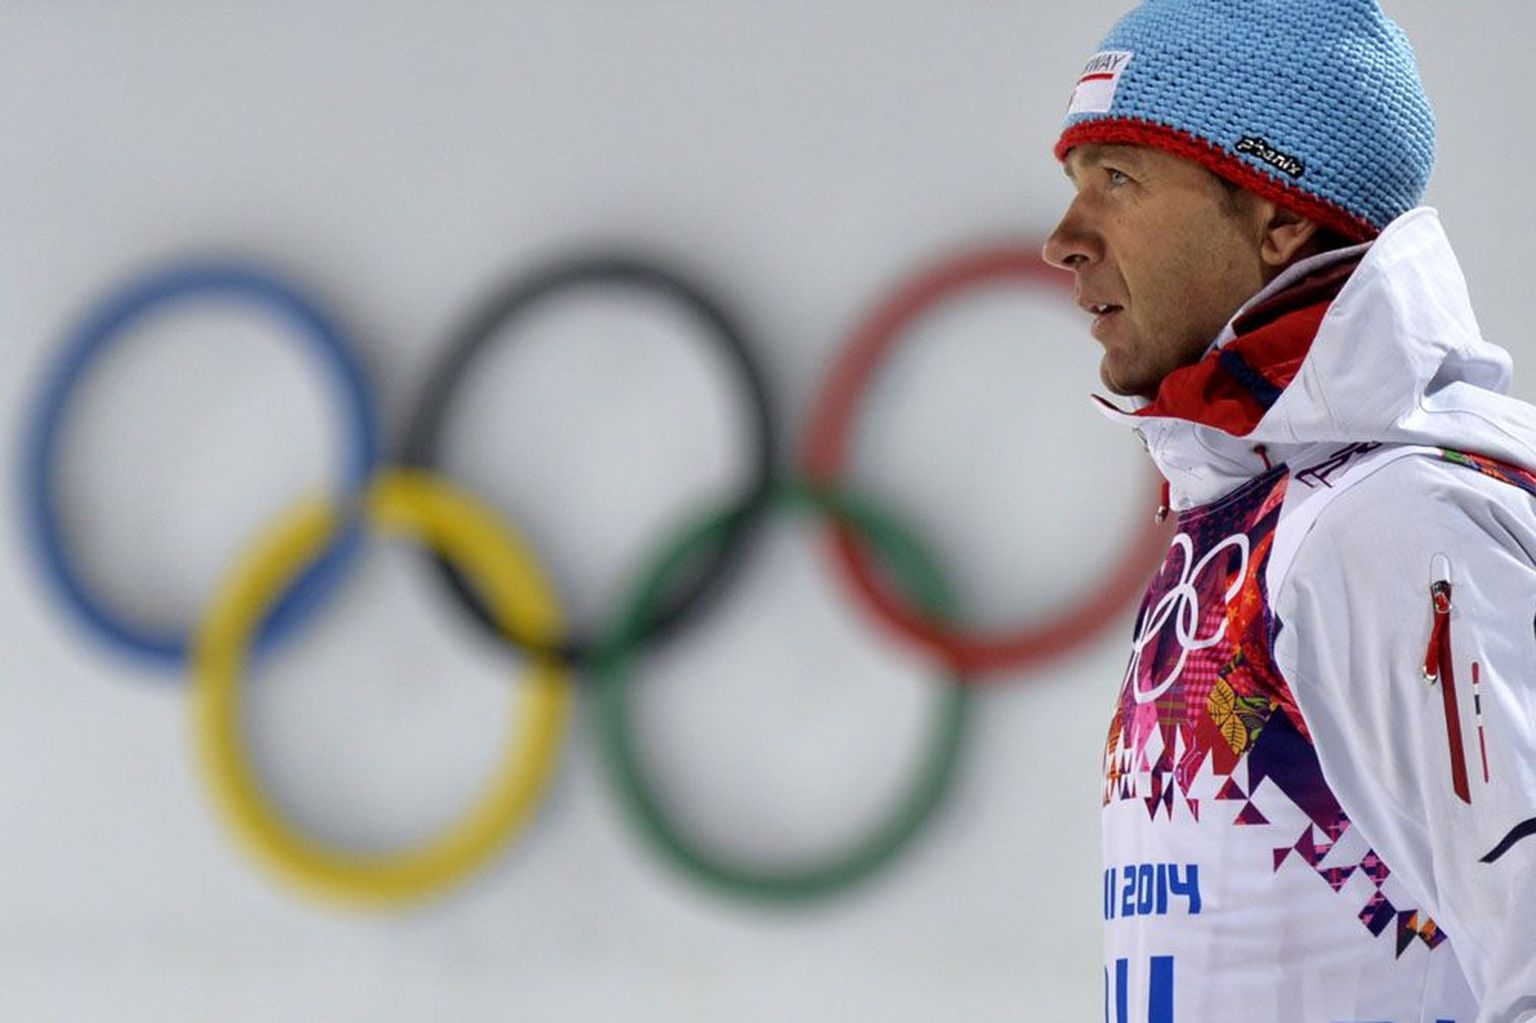 Ole Einar Bjørndalen võitis laupäeval oma seitsmenda OM-kulla, kokku on tal nüüd olümpiamängudelt 12 medalit.